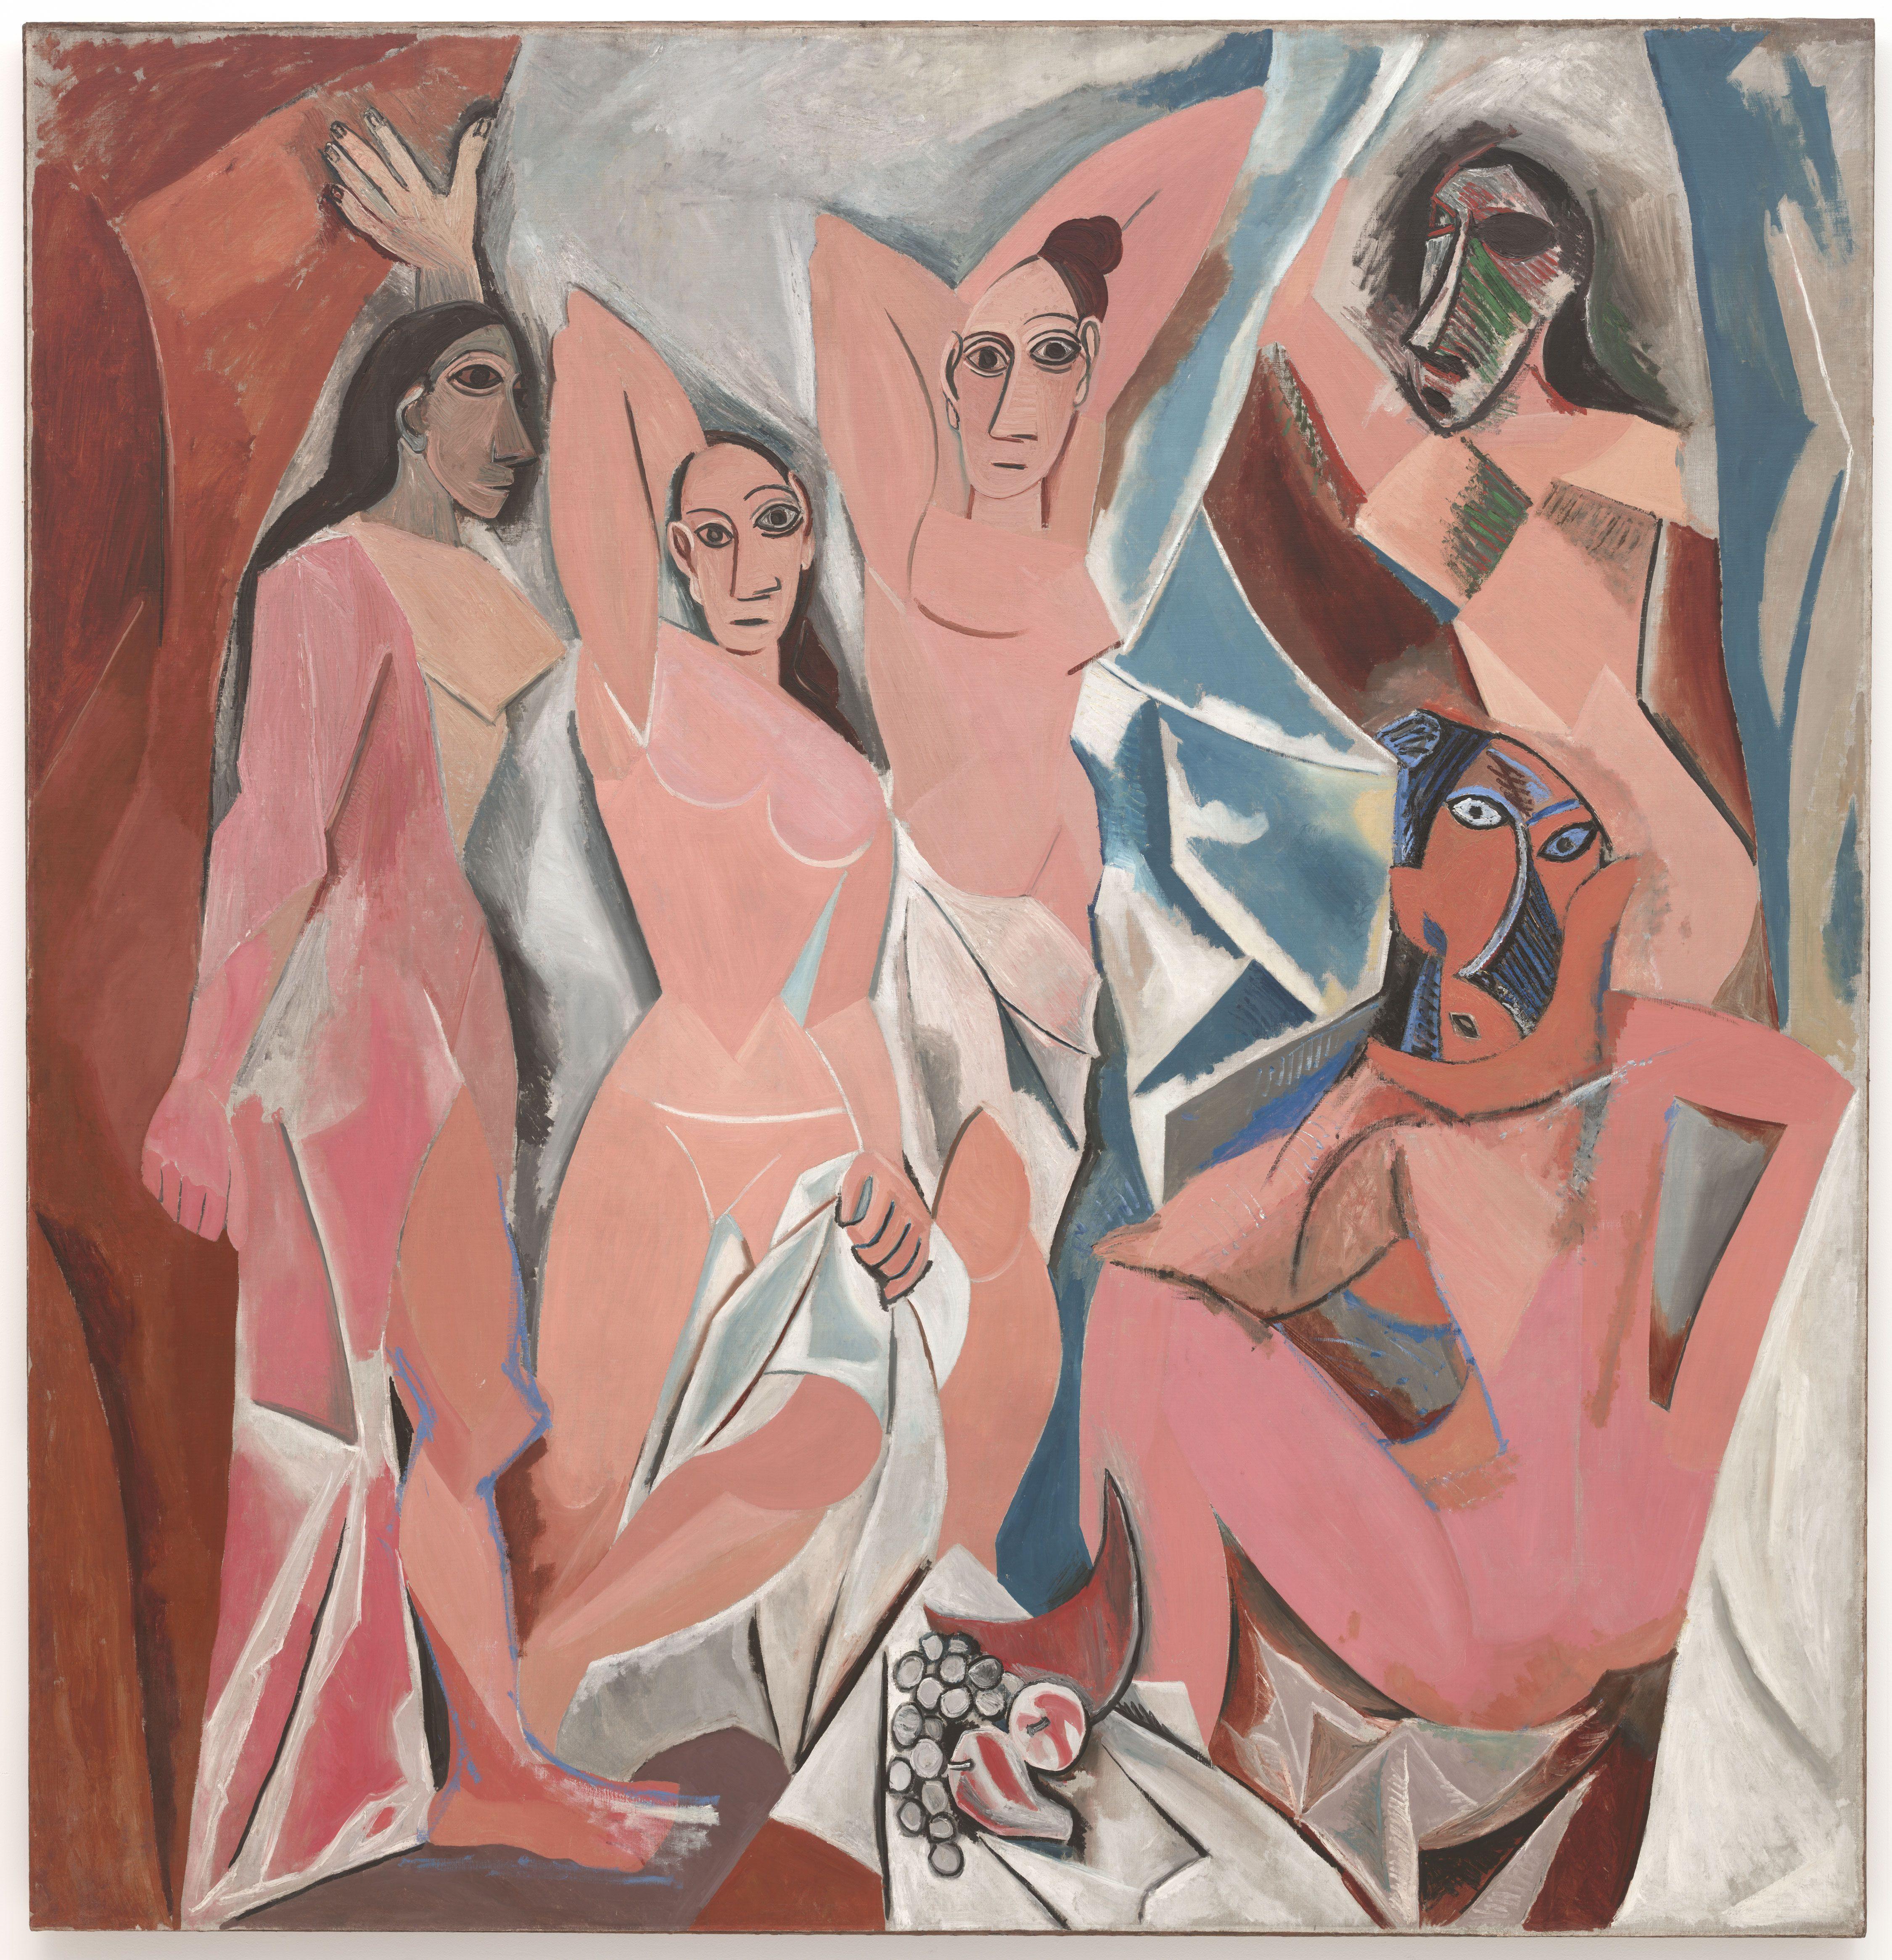 Les Demoiselles d'Avignon by Pablo Picasso - 1907 Museum of Modern Art